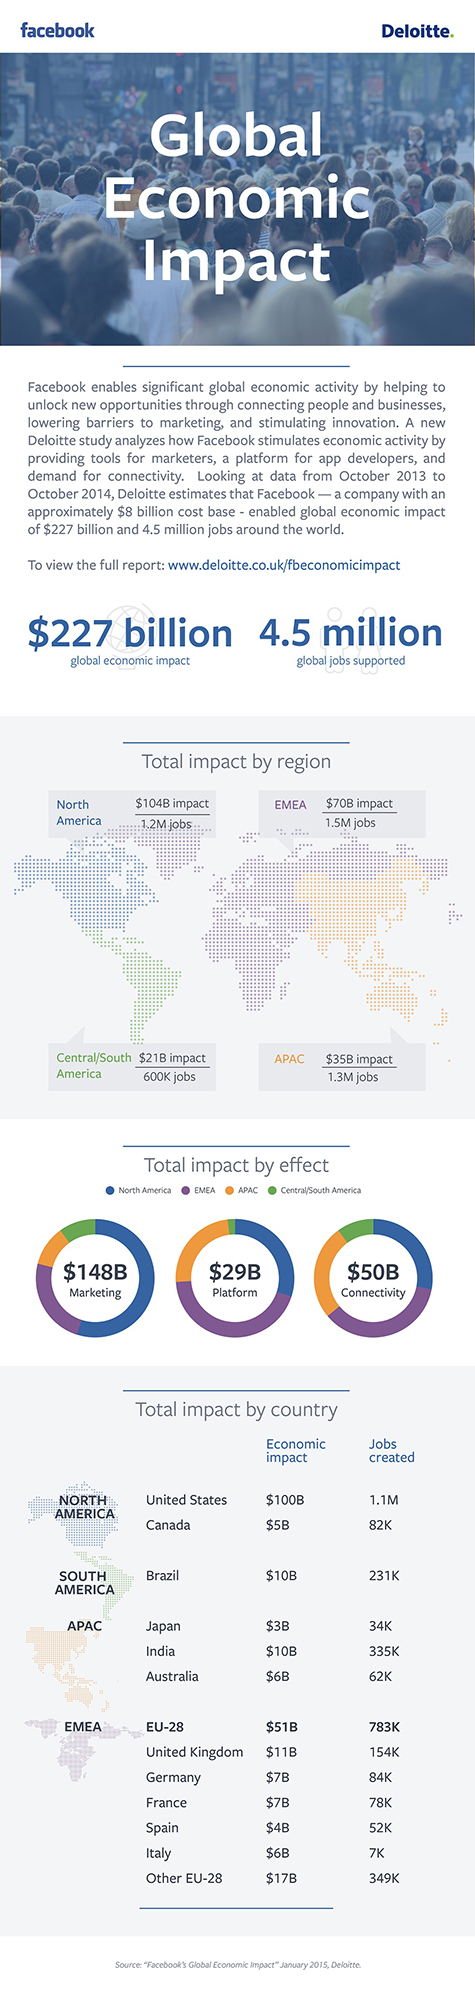 Facebook's Global Economic Impact (Quelle: Deloitte)